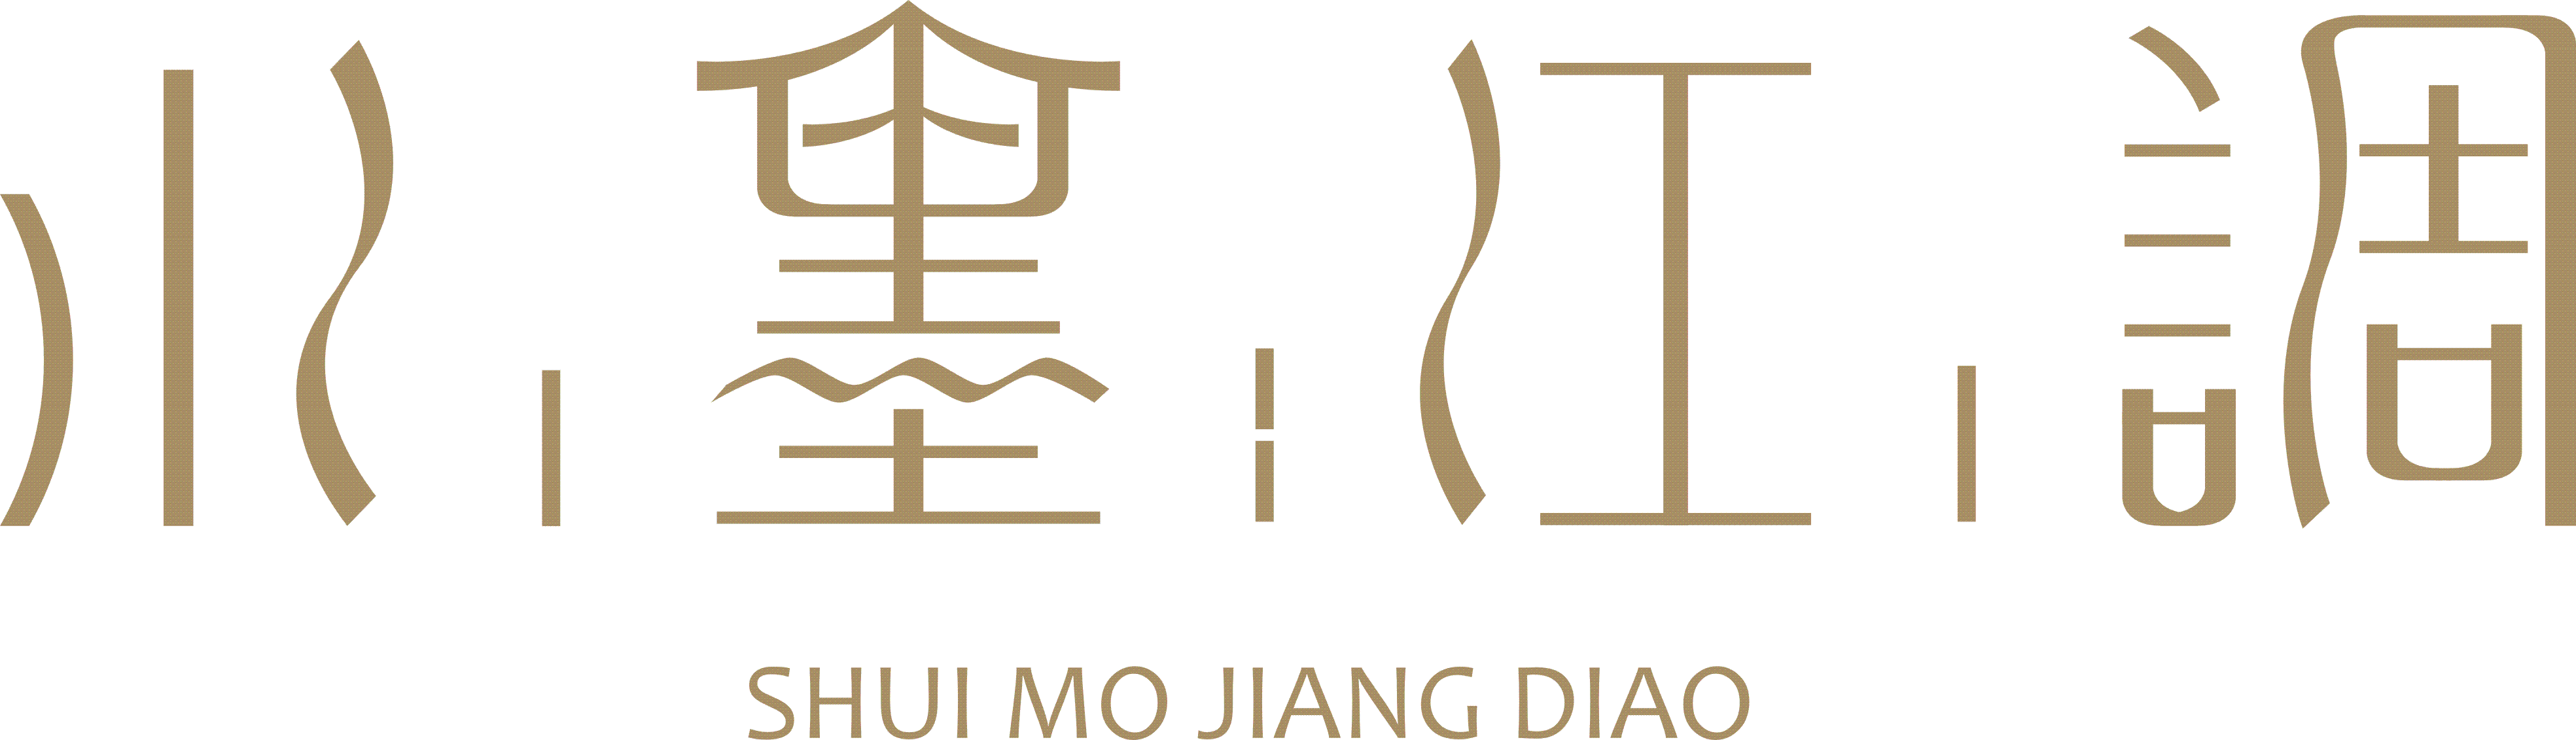 SHUI MO JIANG DIAO